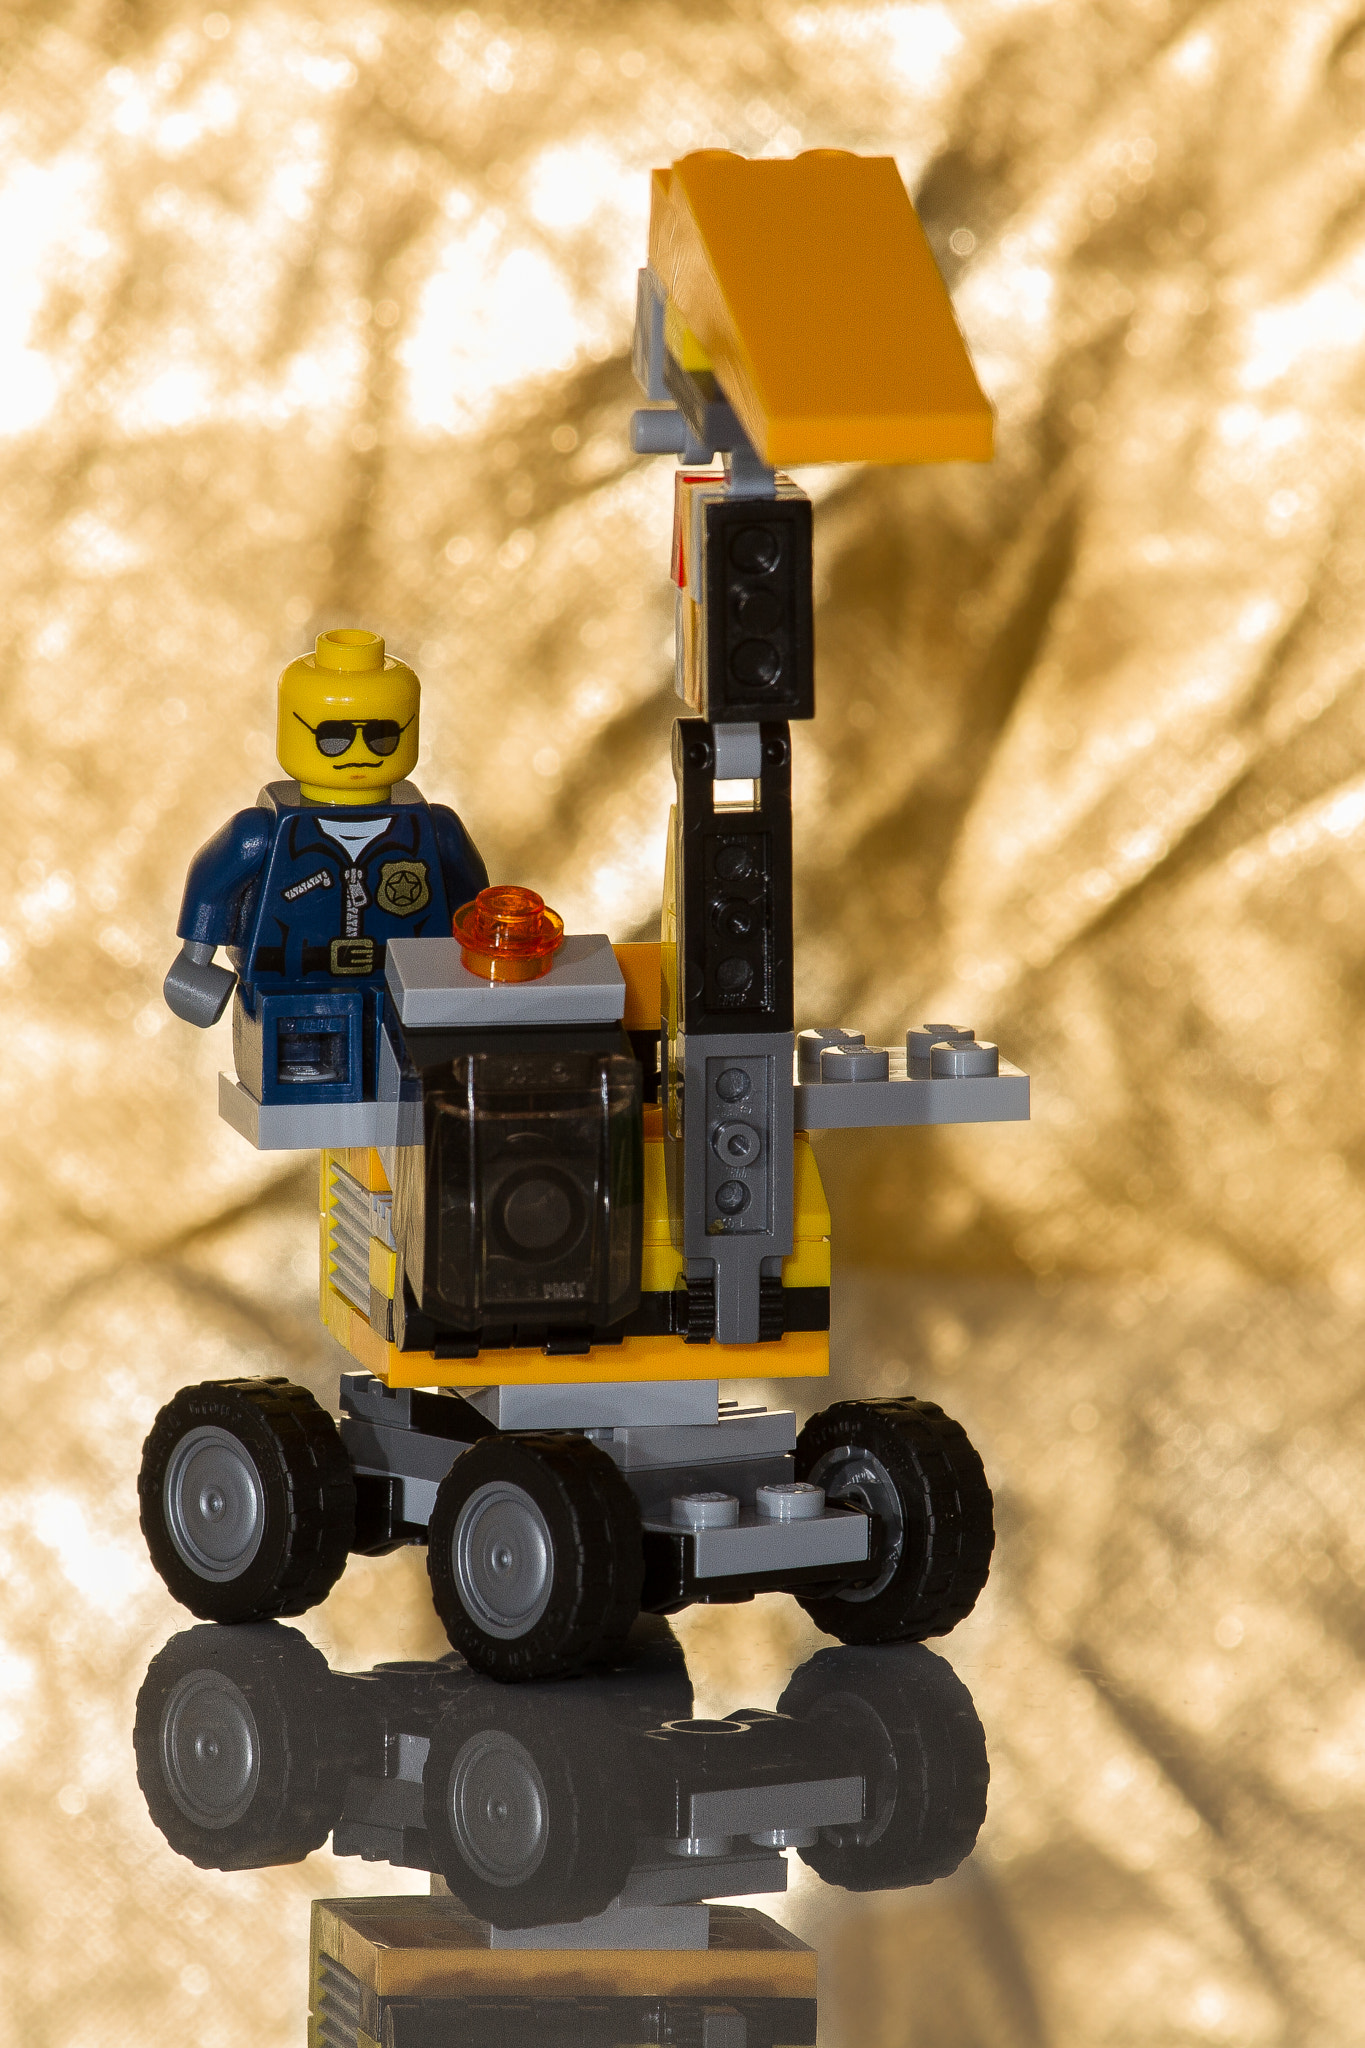 Canon EOS 7D sample photo. Lego explorer photography